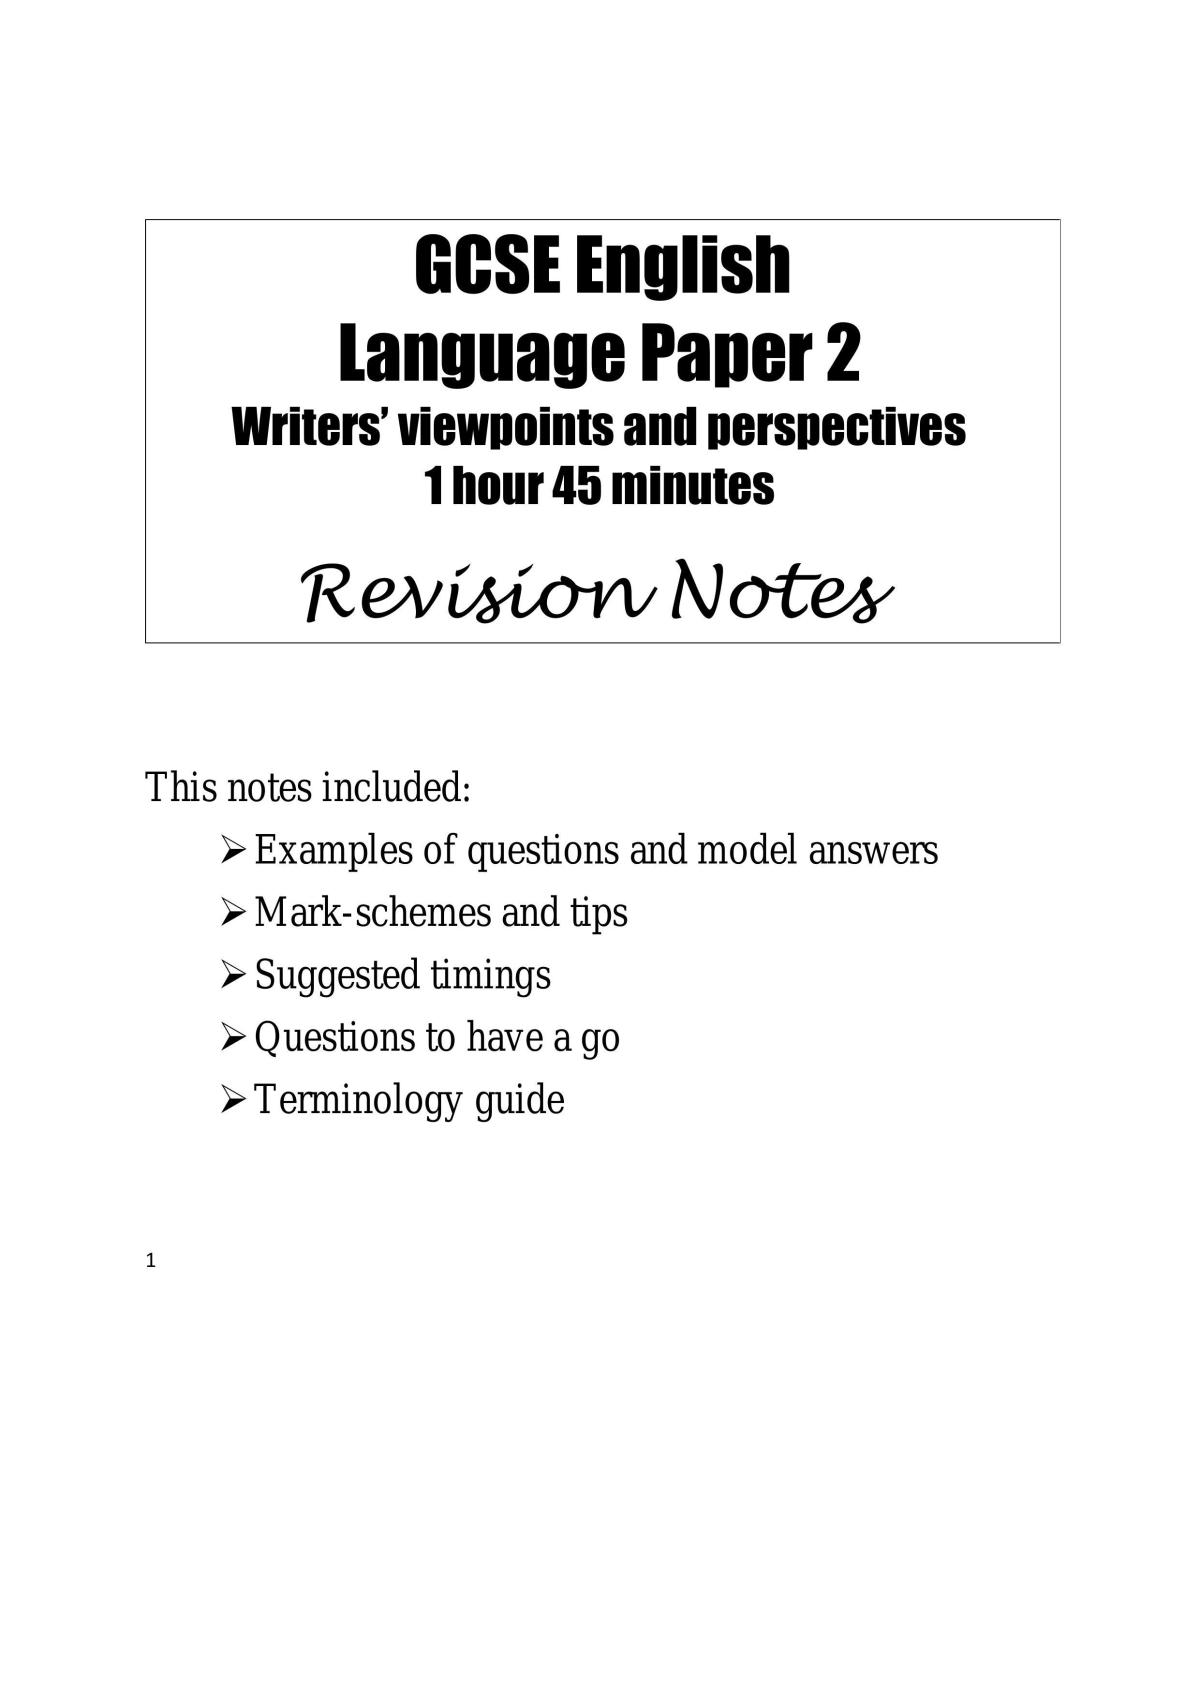 GCSE Language Paper 2 Revision notes - Page 1